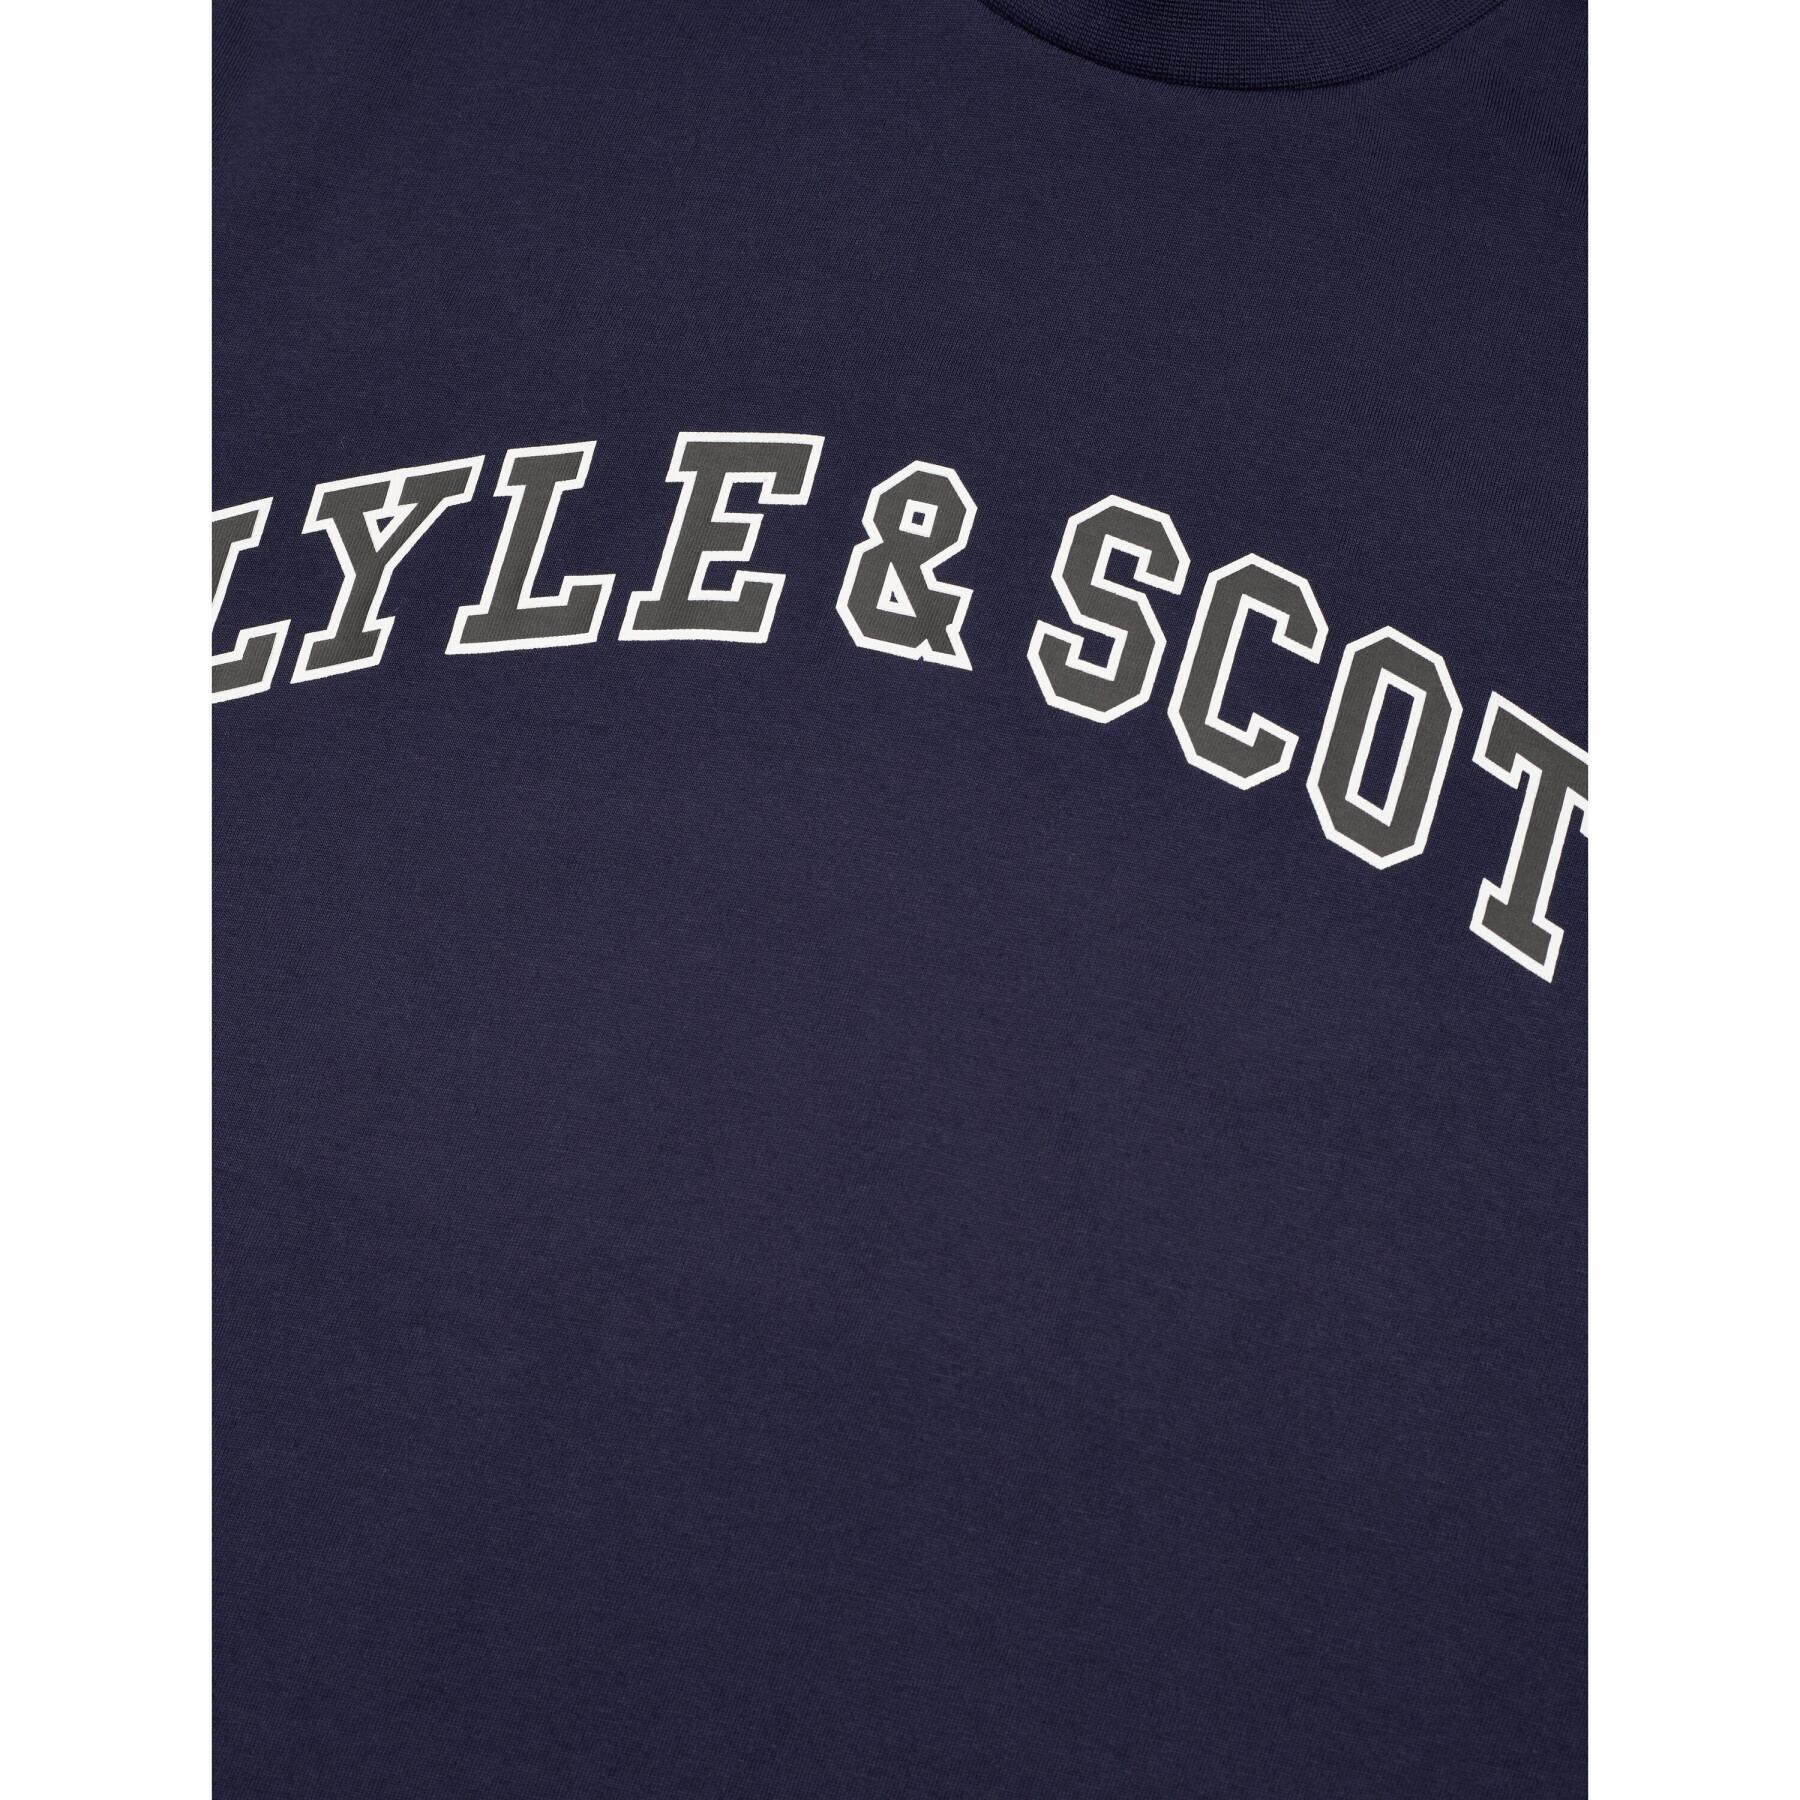 Camiseta Lyle & Scott Collegiate